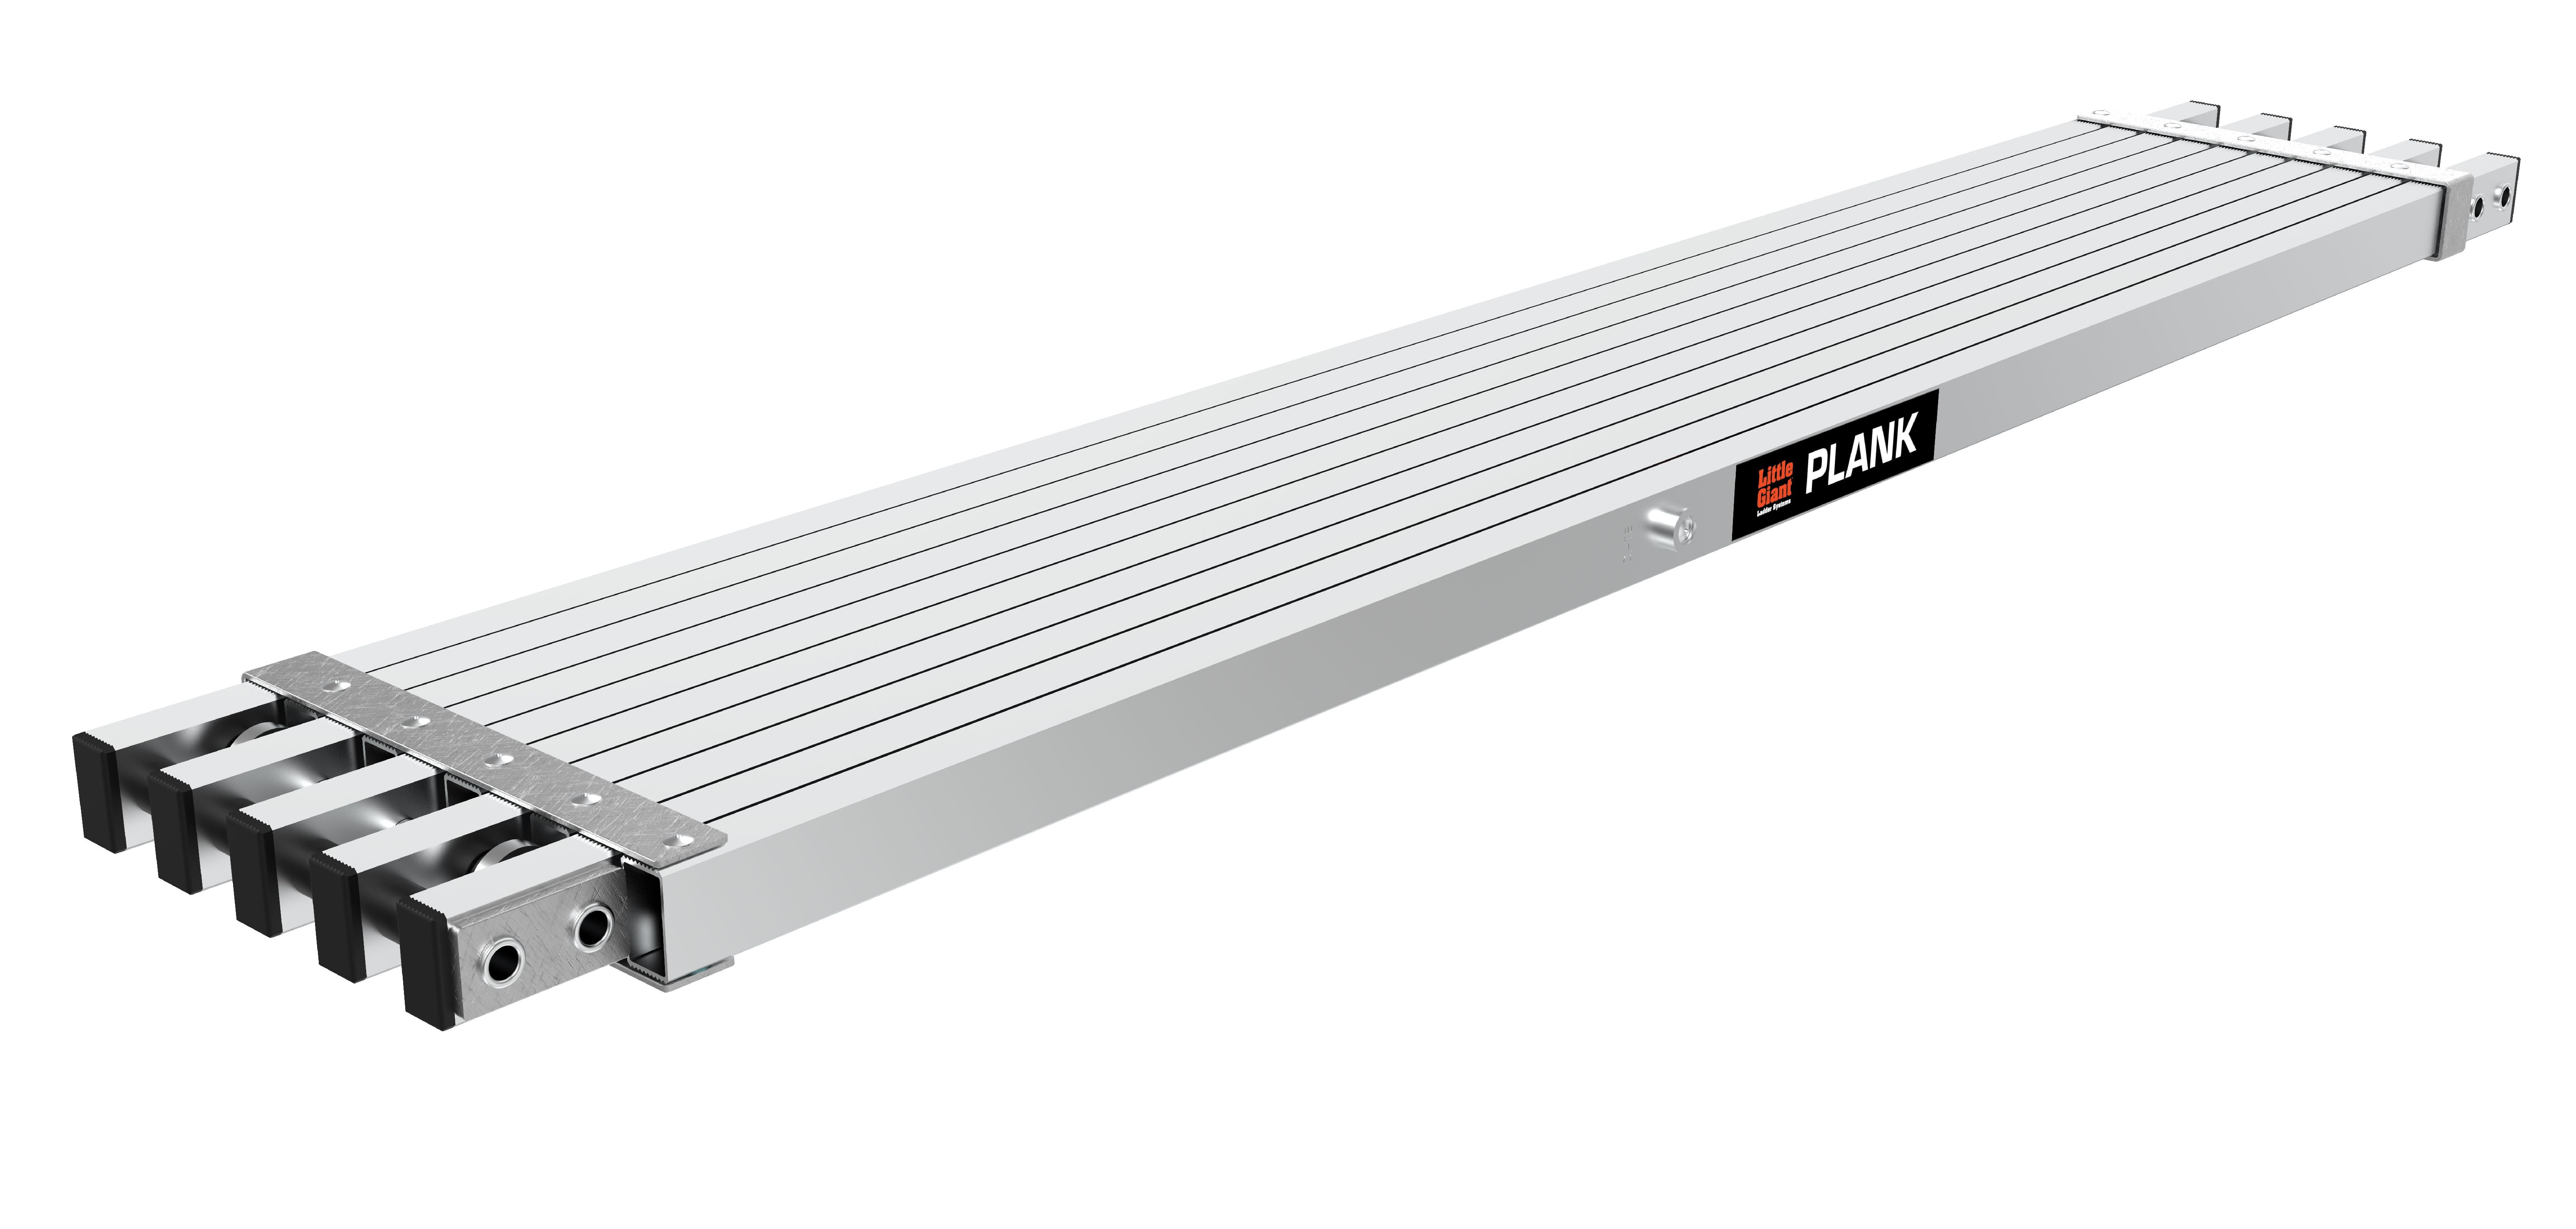 Little Giant Work Plank Aluminum Slip Resistant Platform Versatile 10 16 Feet 